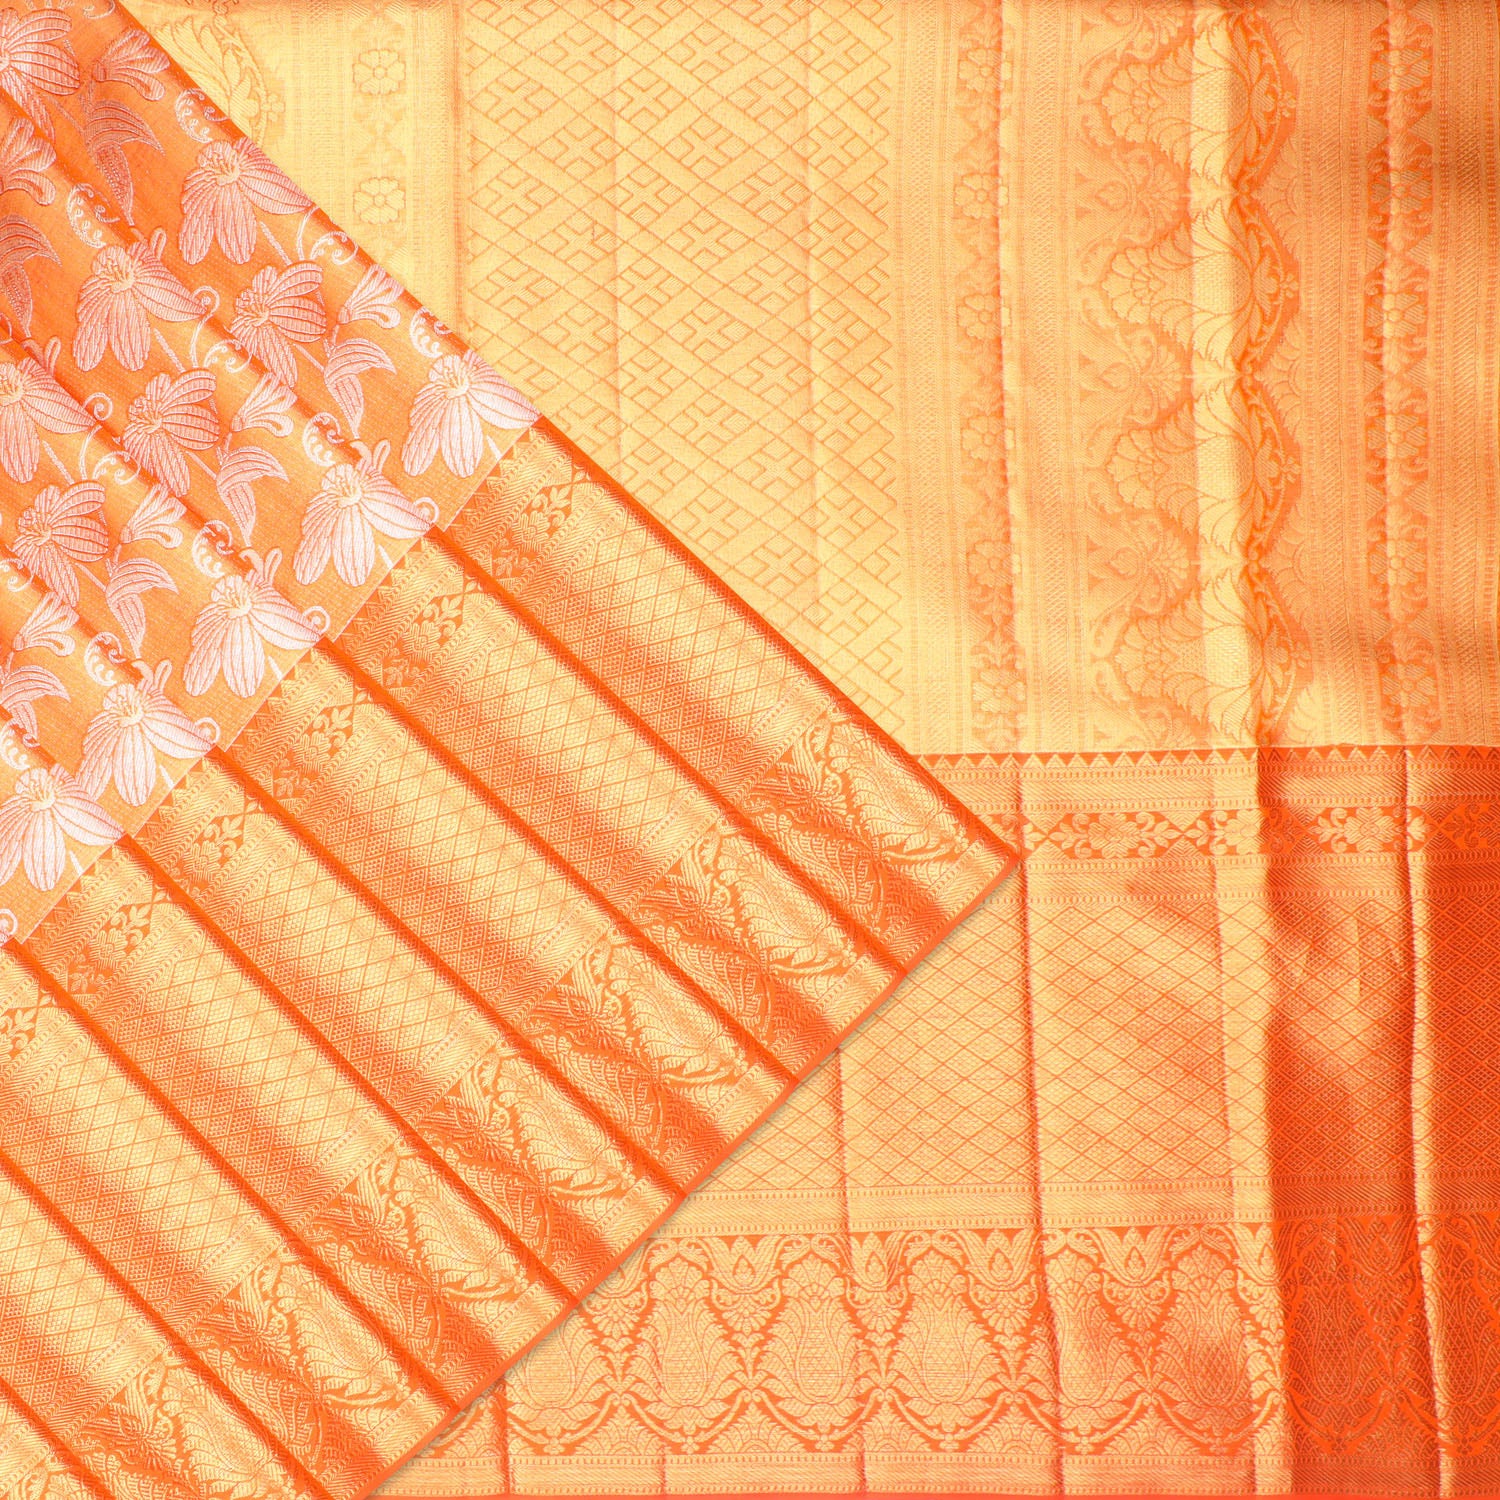 kanjivaram saree orange colour